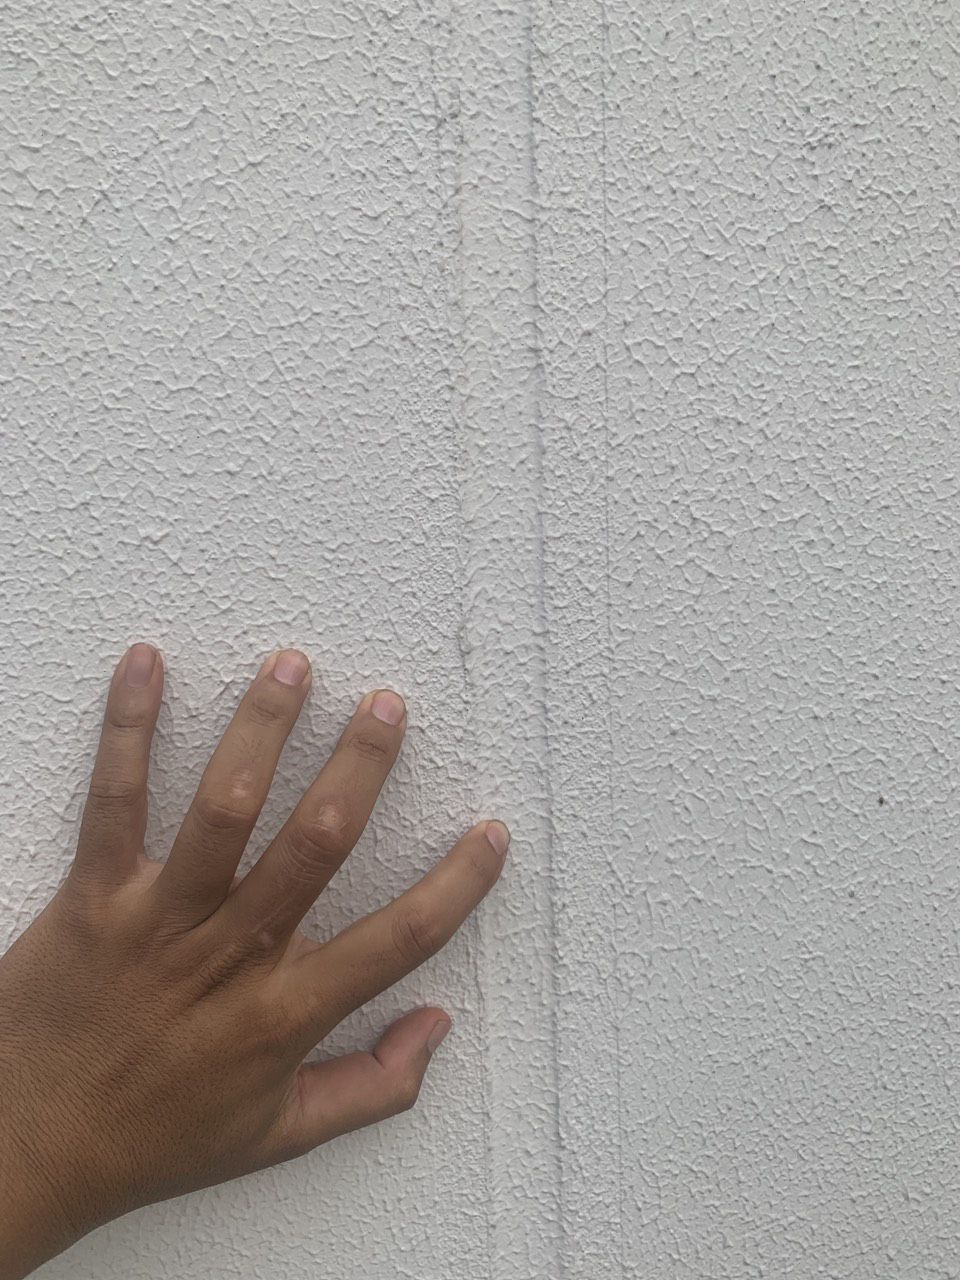 Khe nối tường ngoài sau khi trám keo MS sealant và sơn phủ